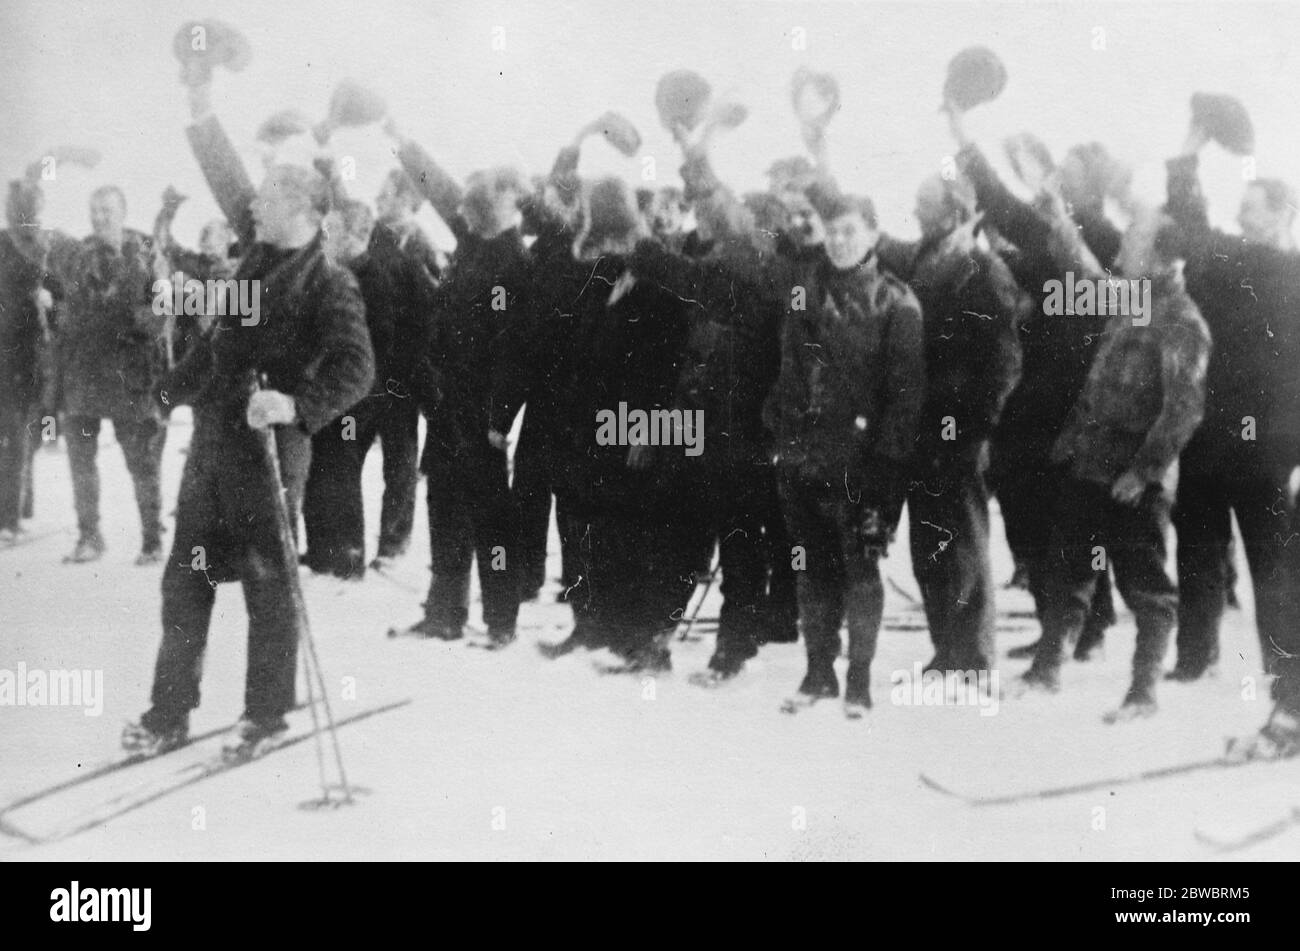 Mistero di Amundsen ; prime fotografie dell'inizio degli spettatori di Amundsen Ellsworth che si acclamano mentre le macchine si alzano dal ghiaccio 17 giugno 1925 Foto Stock